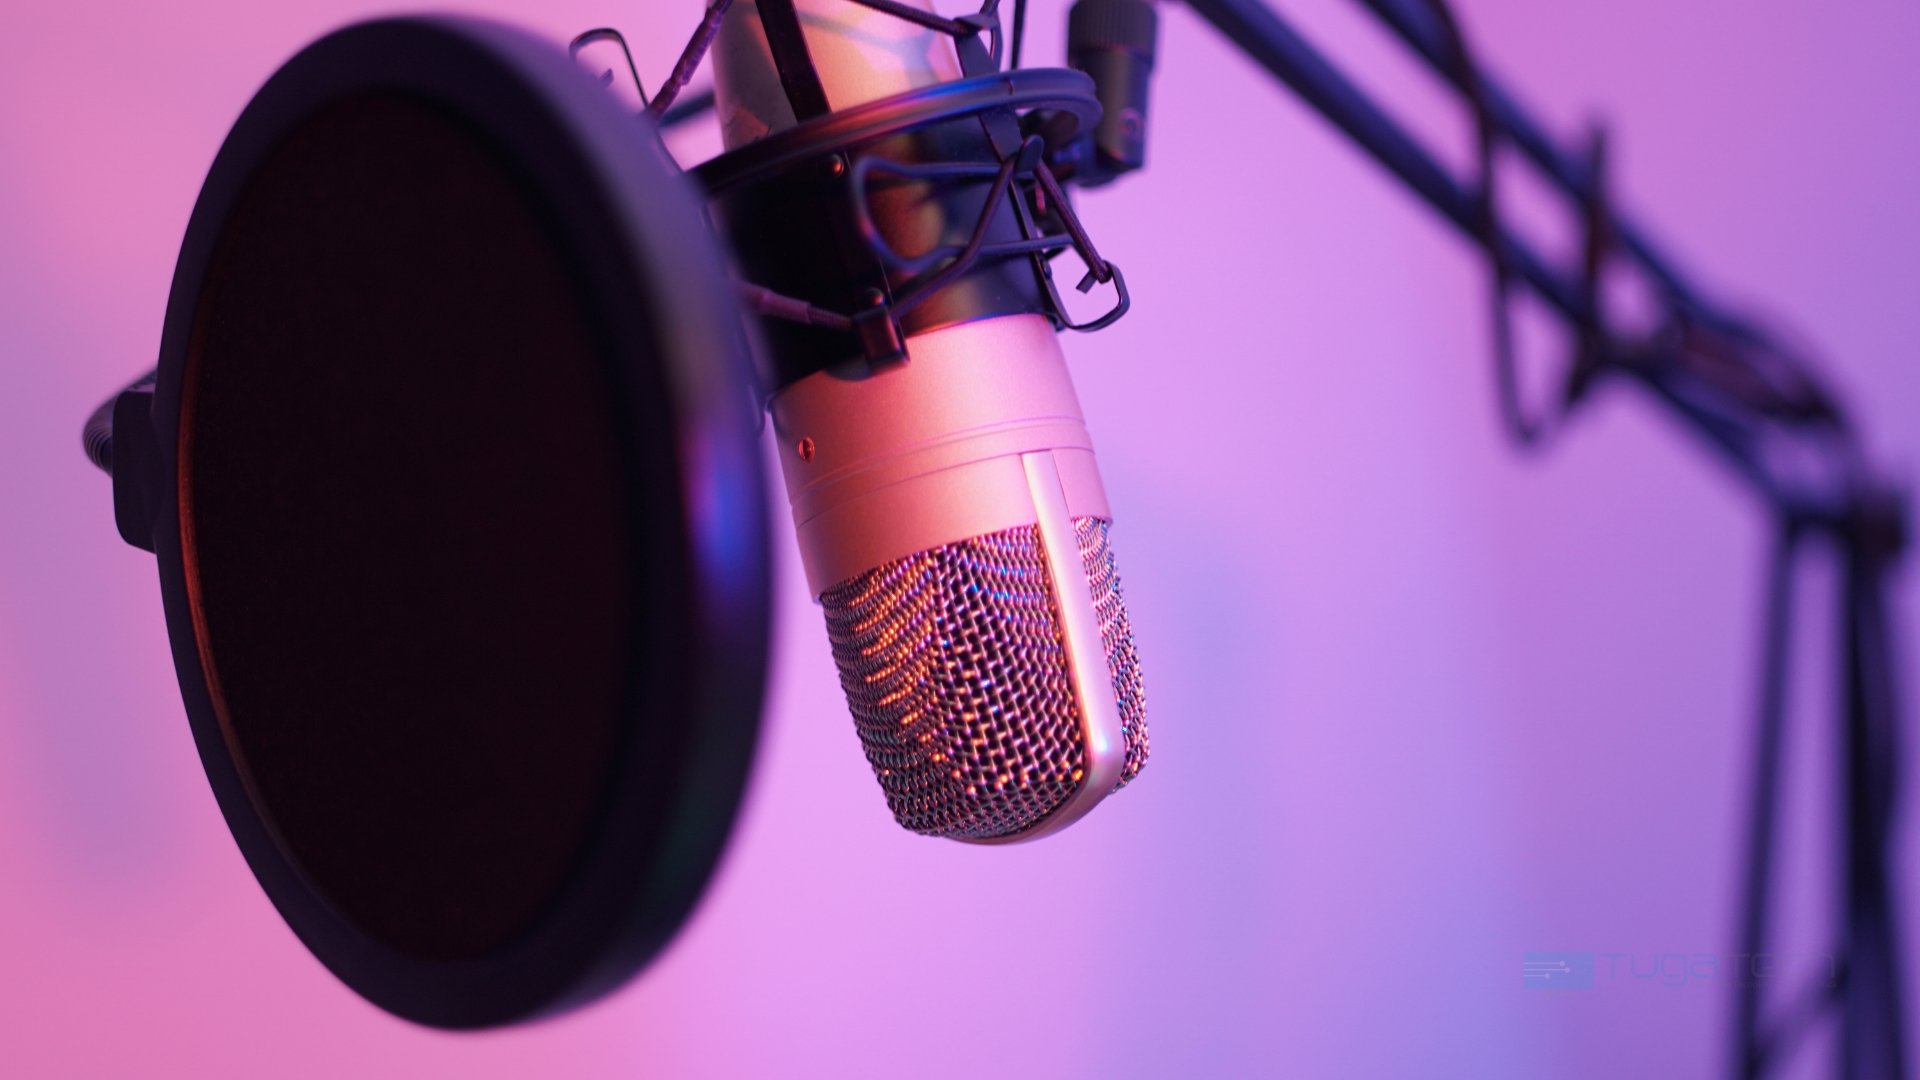 Microfone usado para podcasts